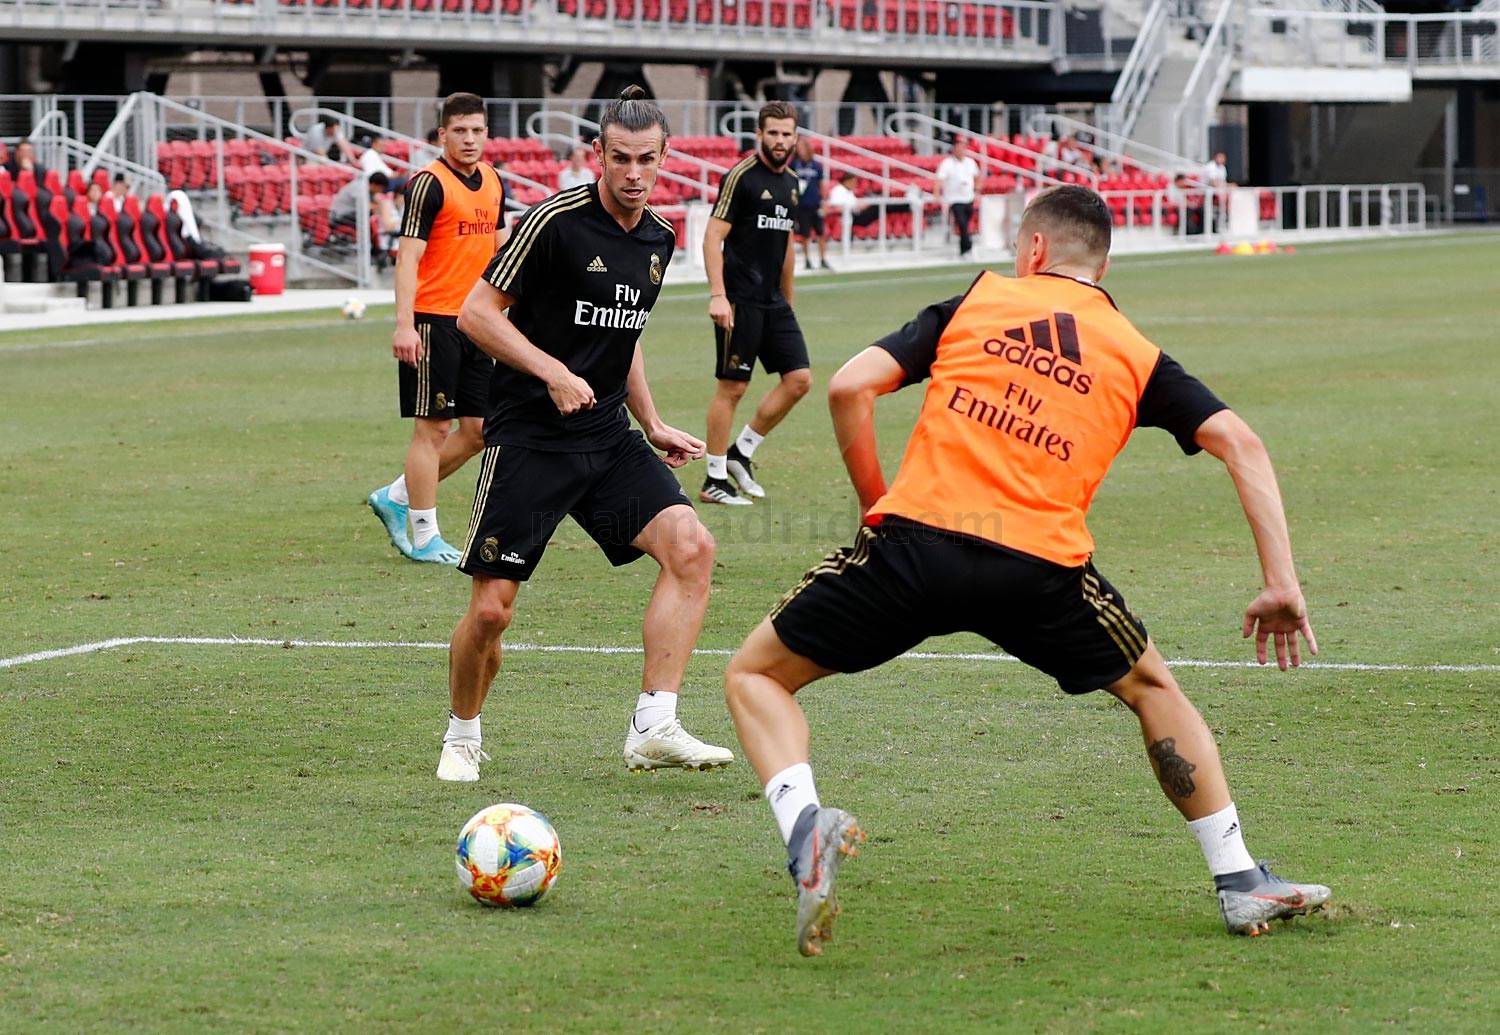 Real, Bale tập luyện - Bóng Đá